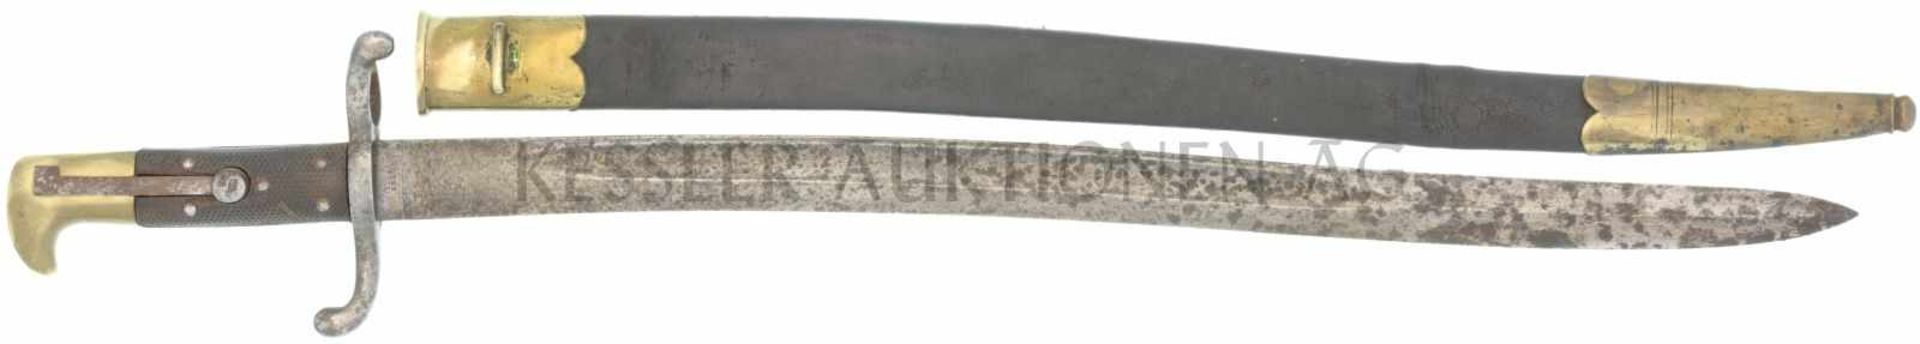 Jatagan zu Feldstutzer Ord. 1864 KL 52cm, TL 67cm, geschweifte Rückenklinge mit beidseitiger